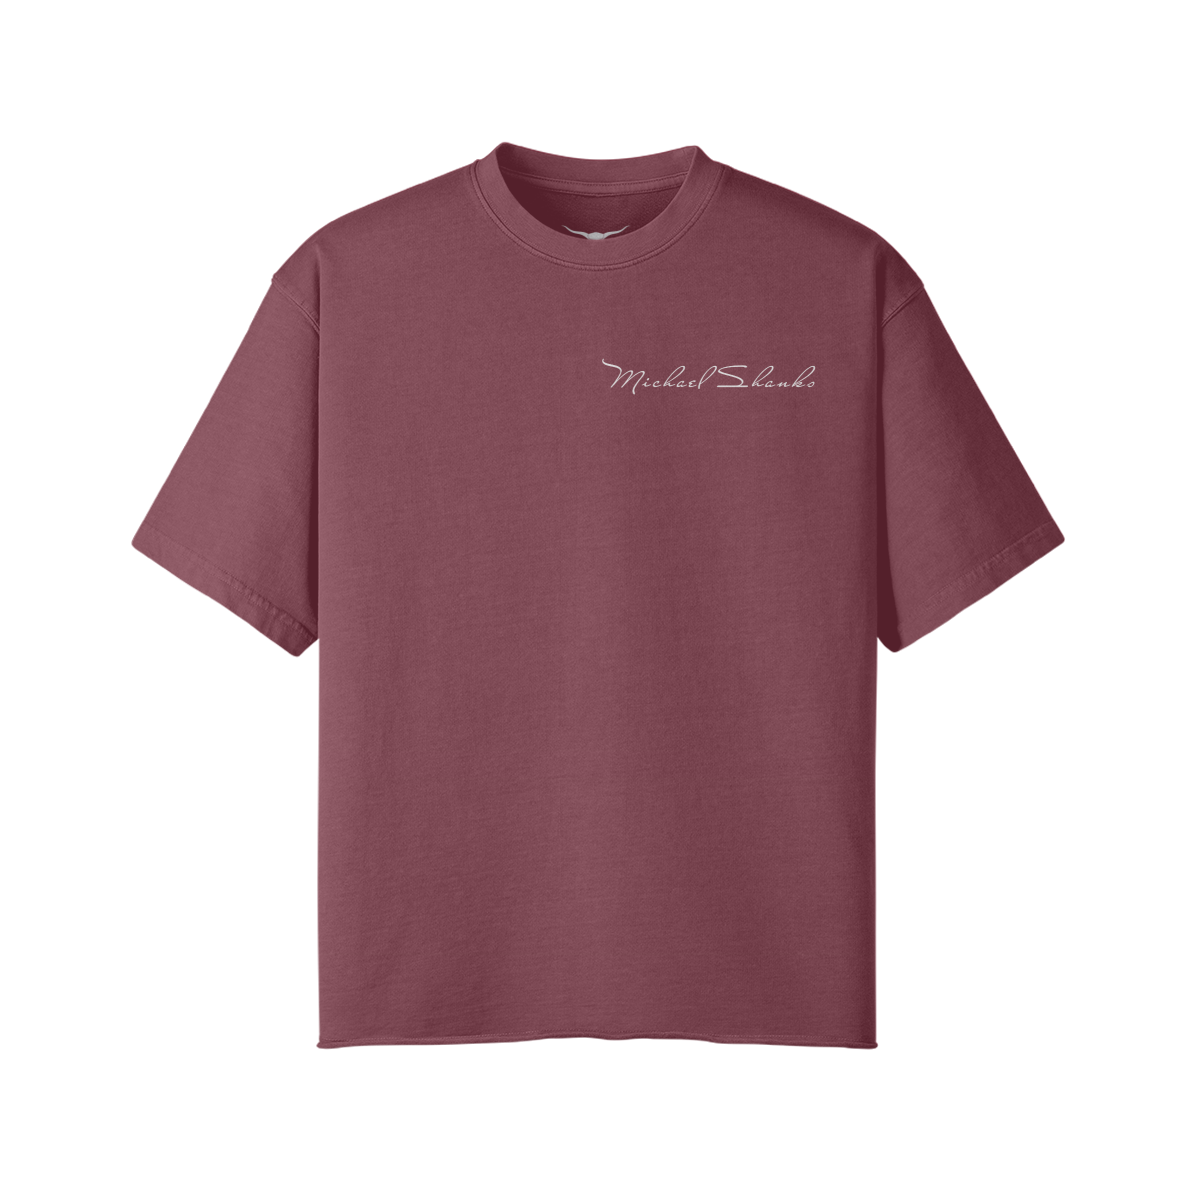 Michael Shanks Oversized T-Shirt